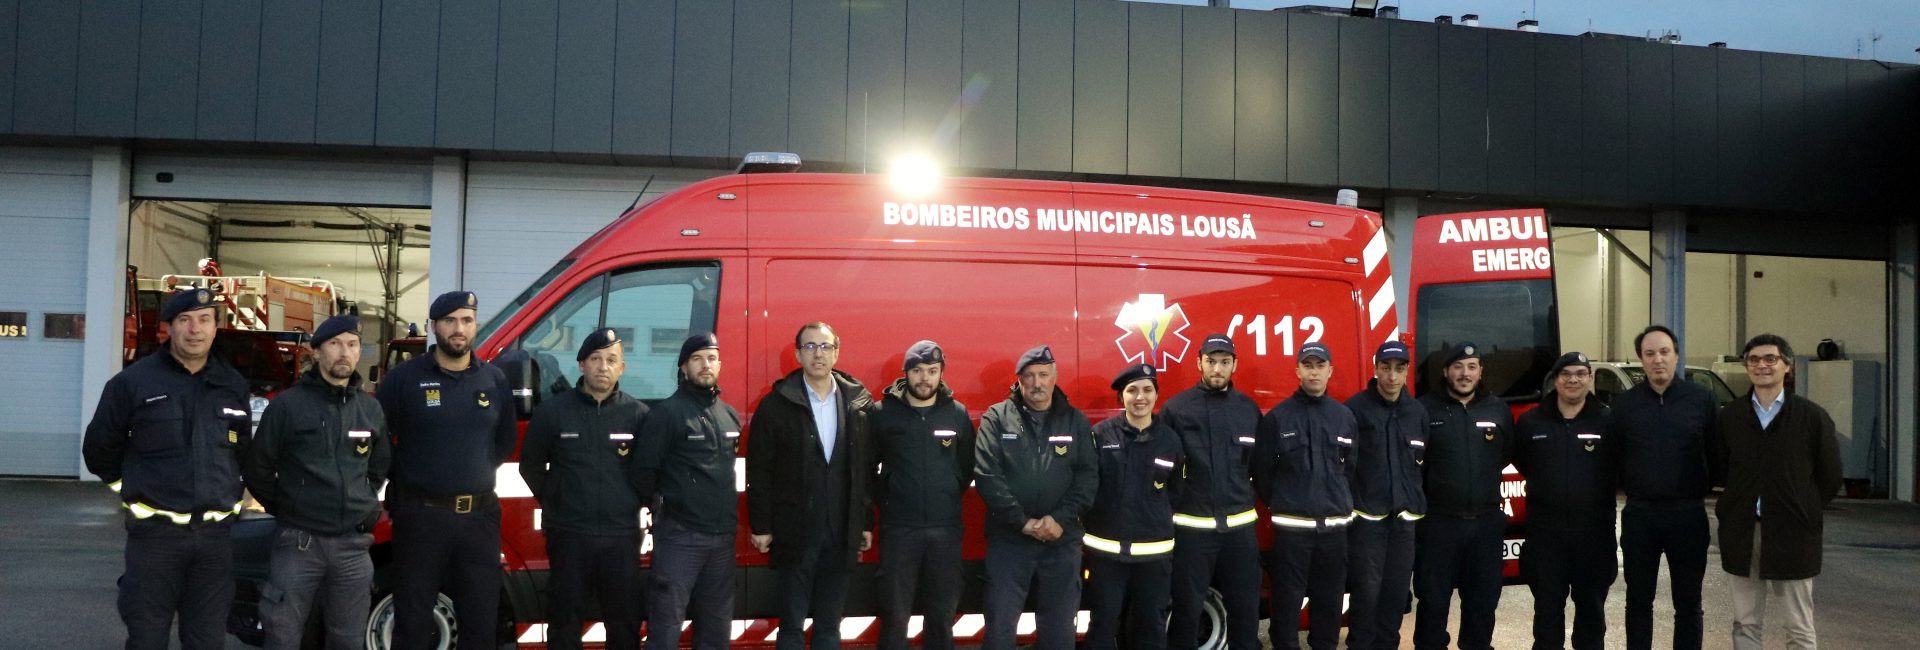 Câmara Municipal da Lousã adquiriu Ambulância de Socorro para os Bombeiros Municipais